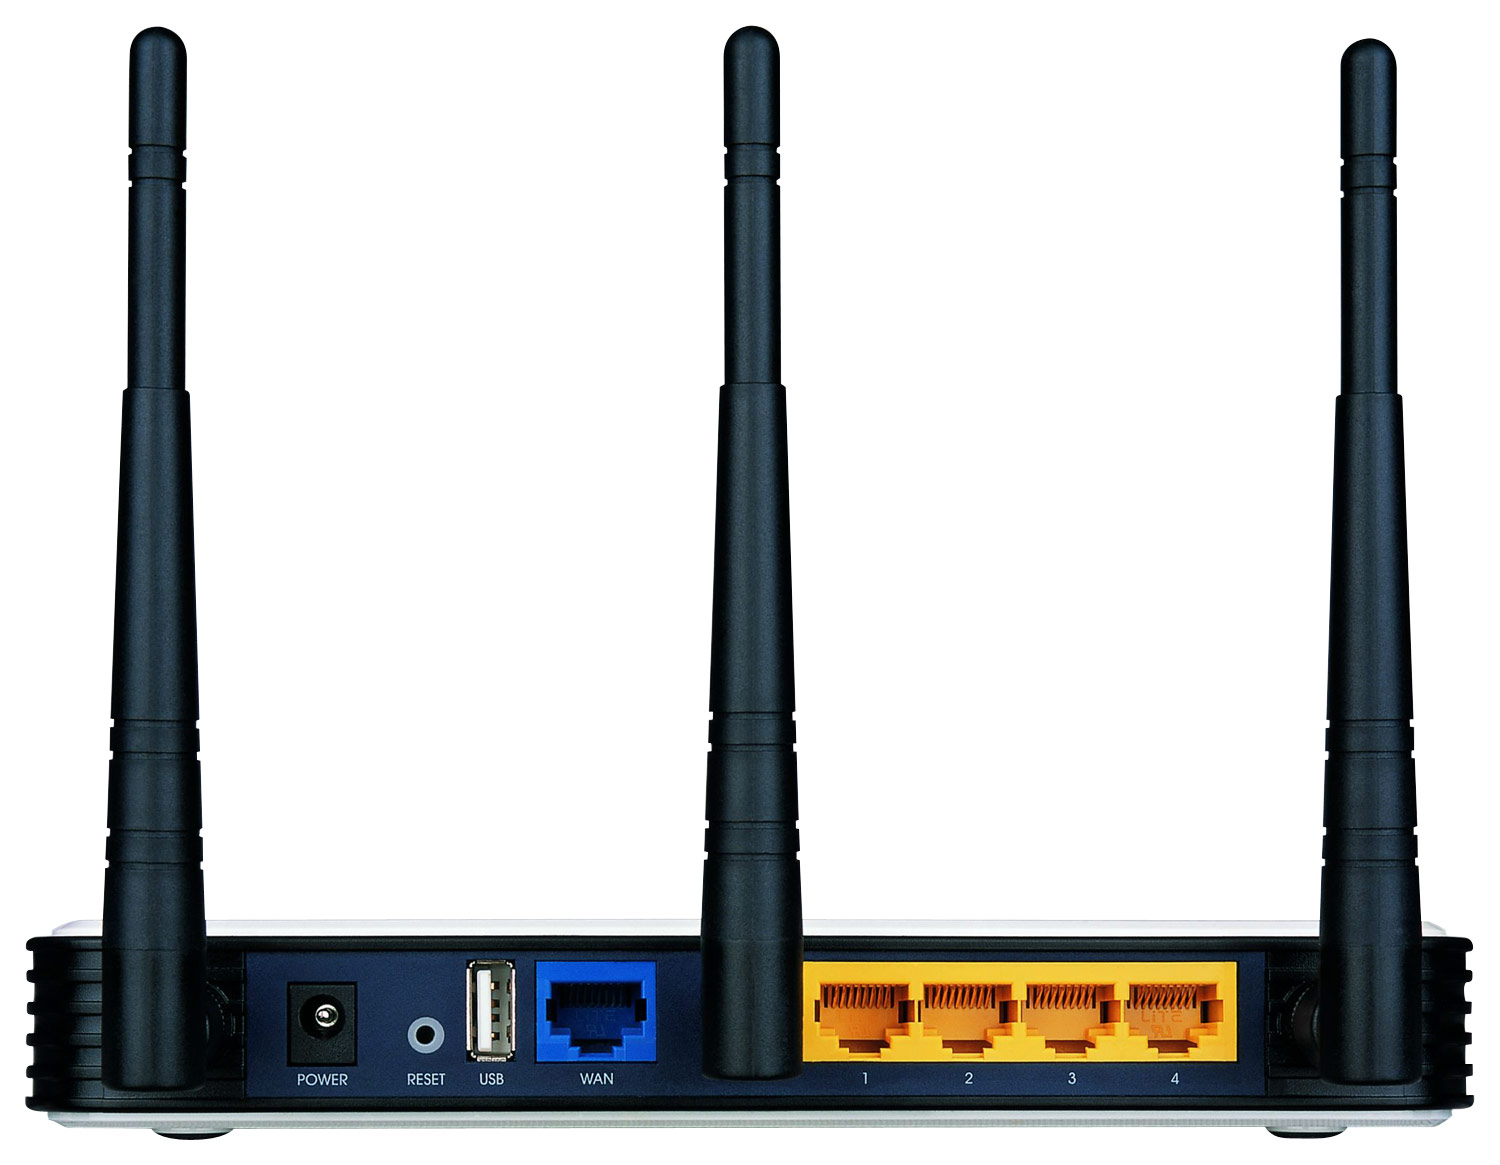 Routeur tp link 940 - Alt Technologie